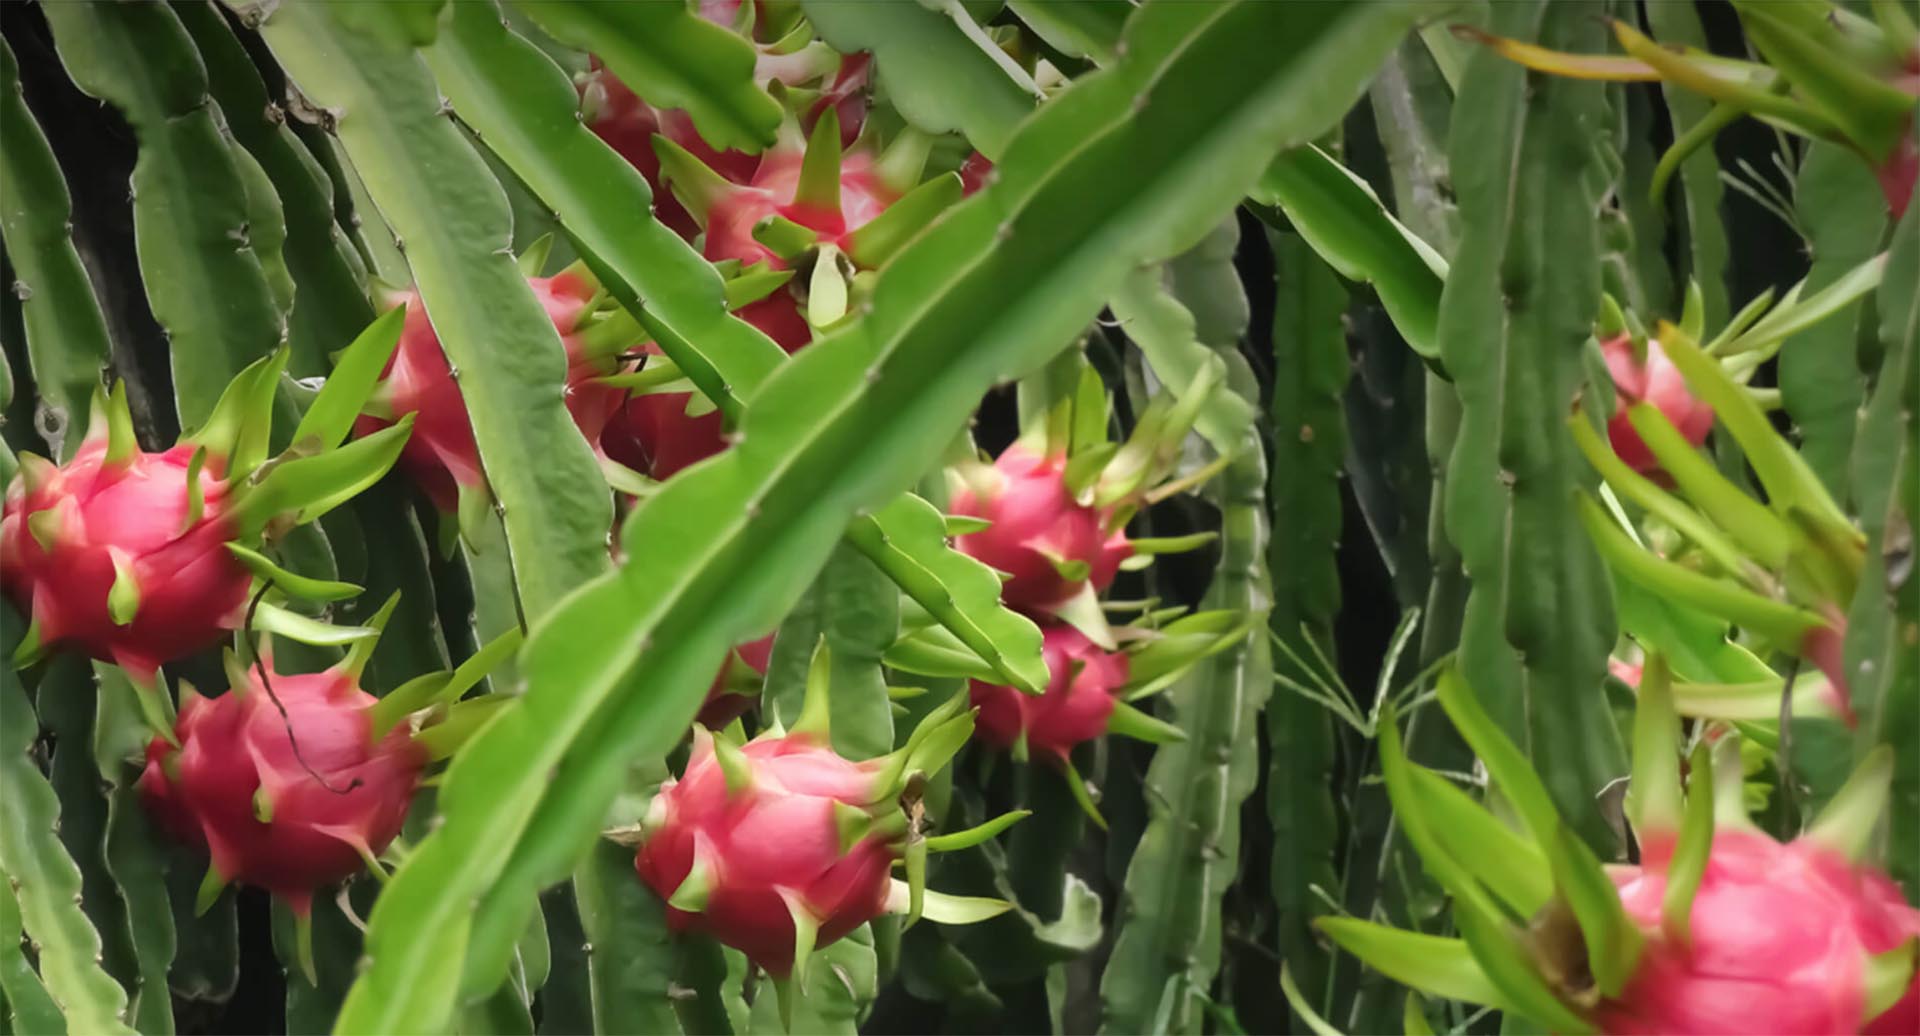 Pitaya fruit growing on plants